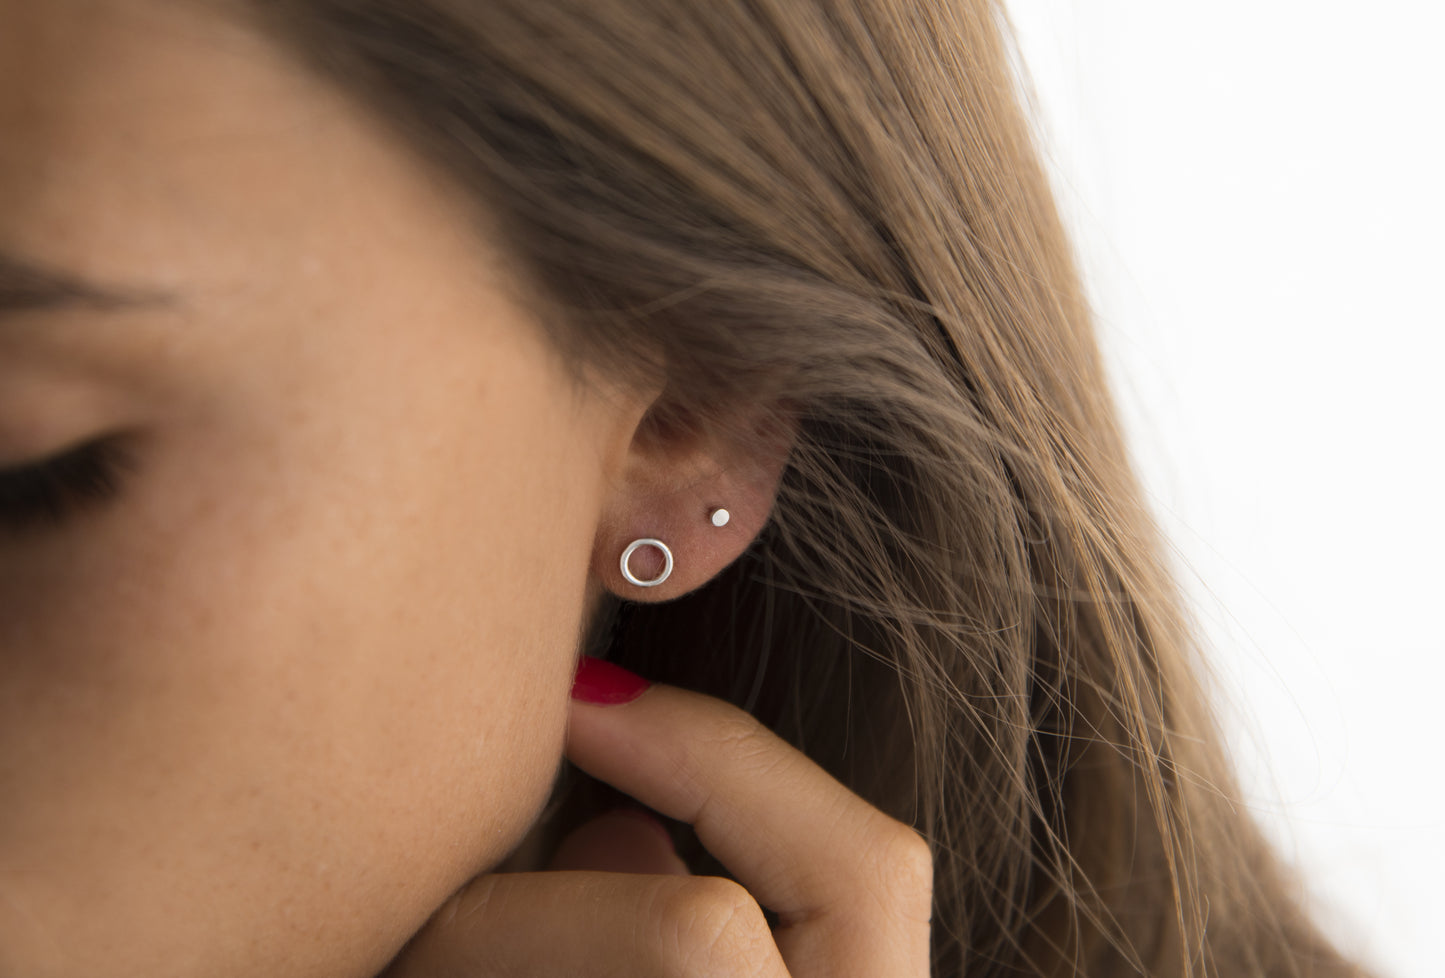 Tiny Little Dot earring